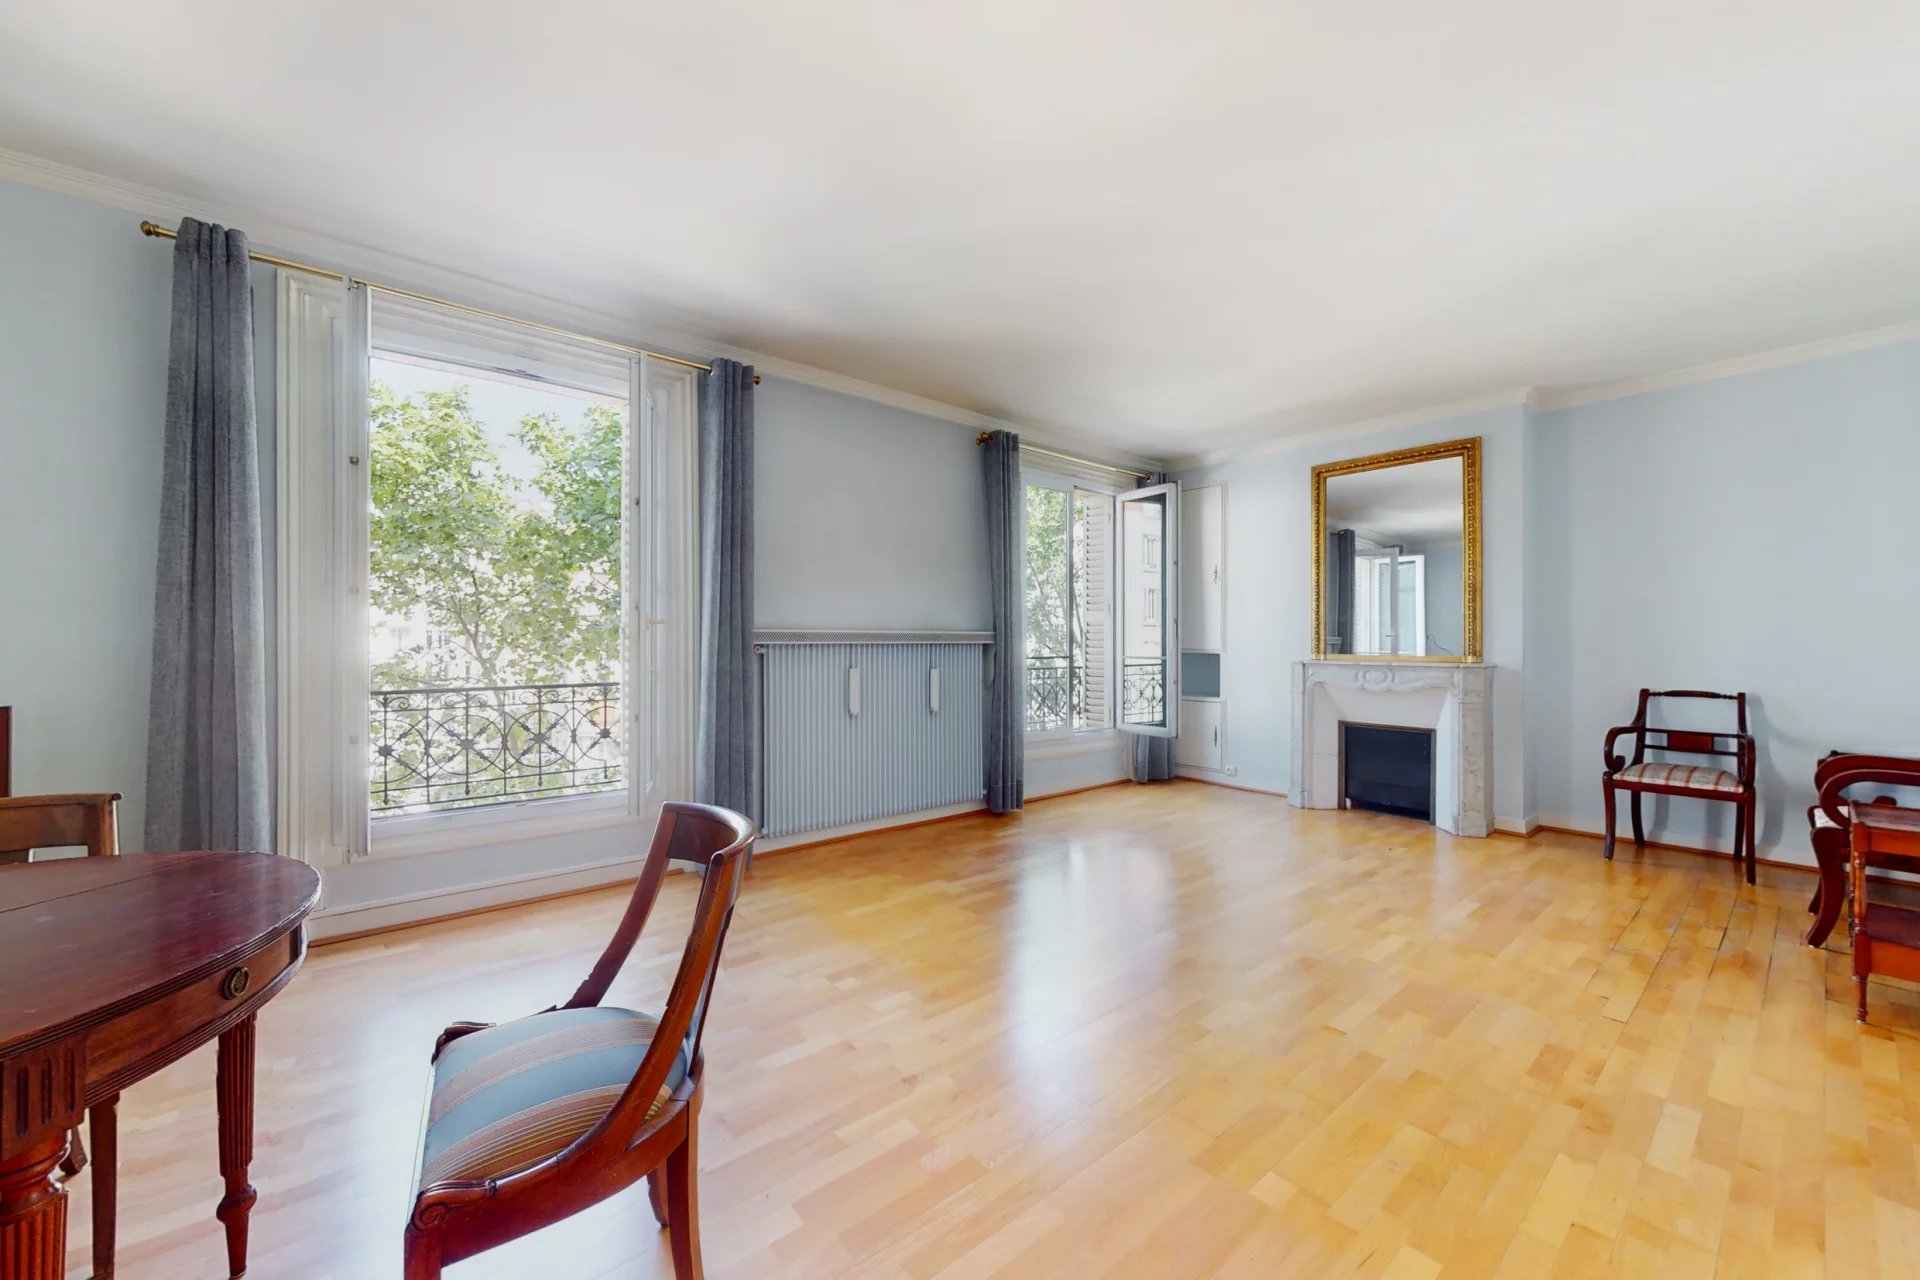 Appartement 3 pièces 62,51m² - Porte Maillot/Ternes